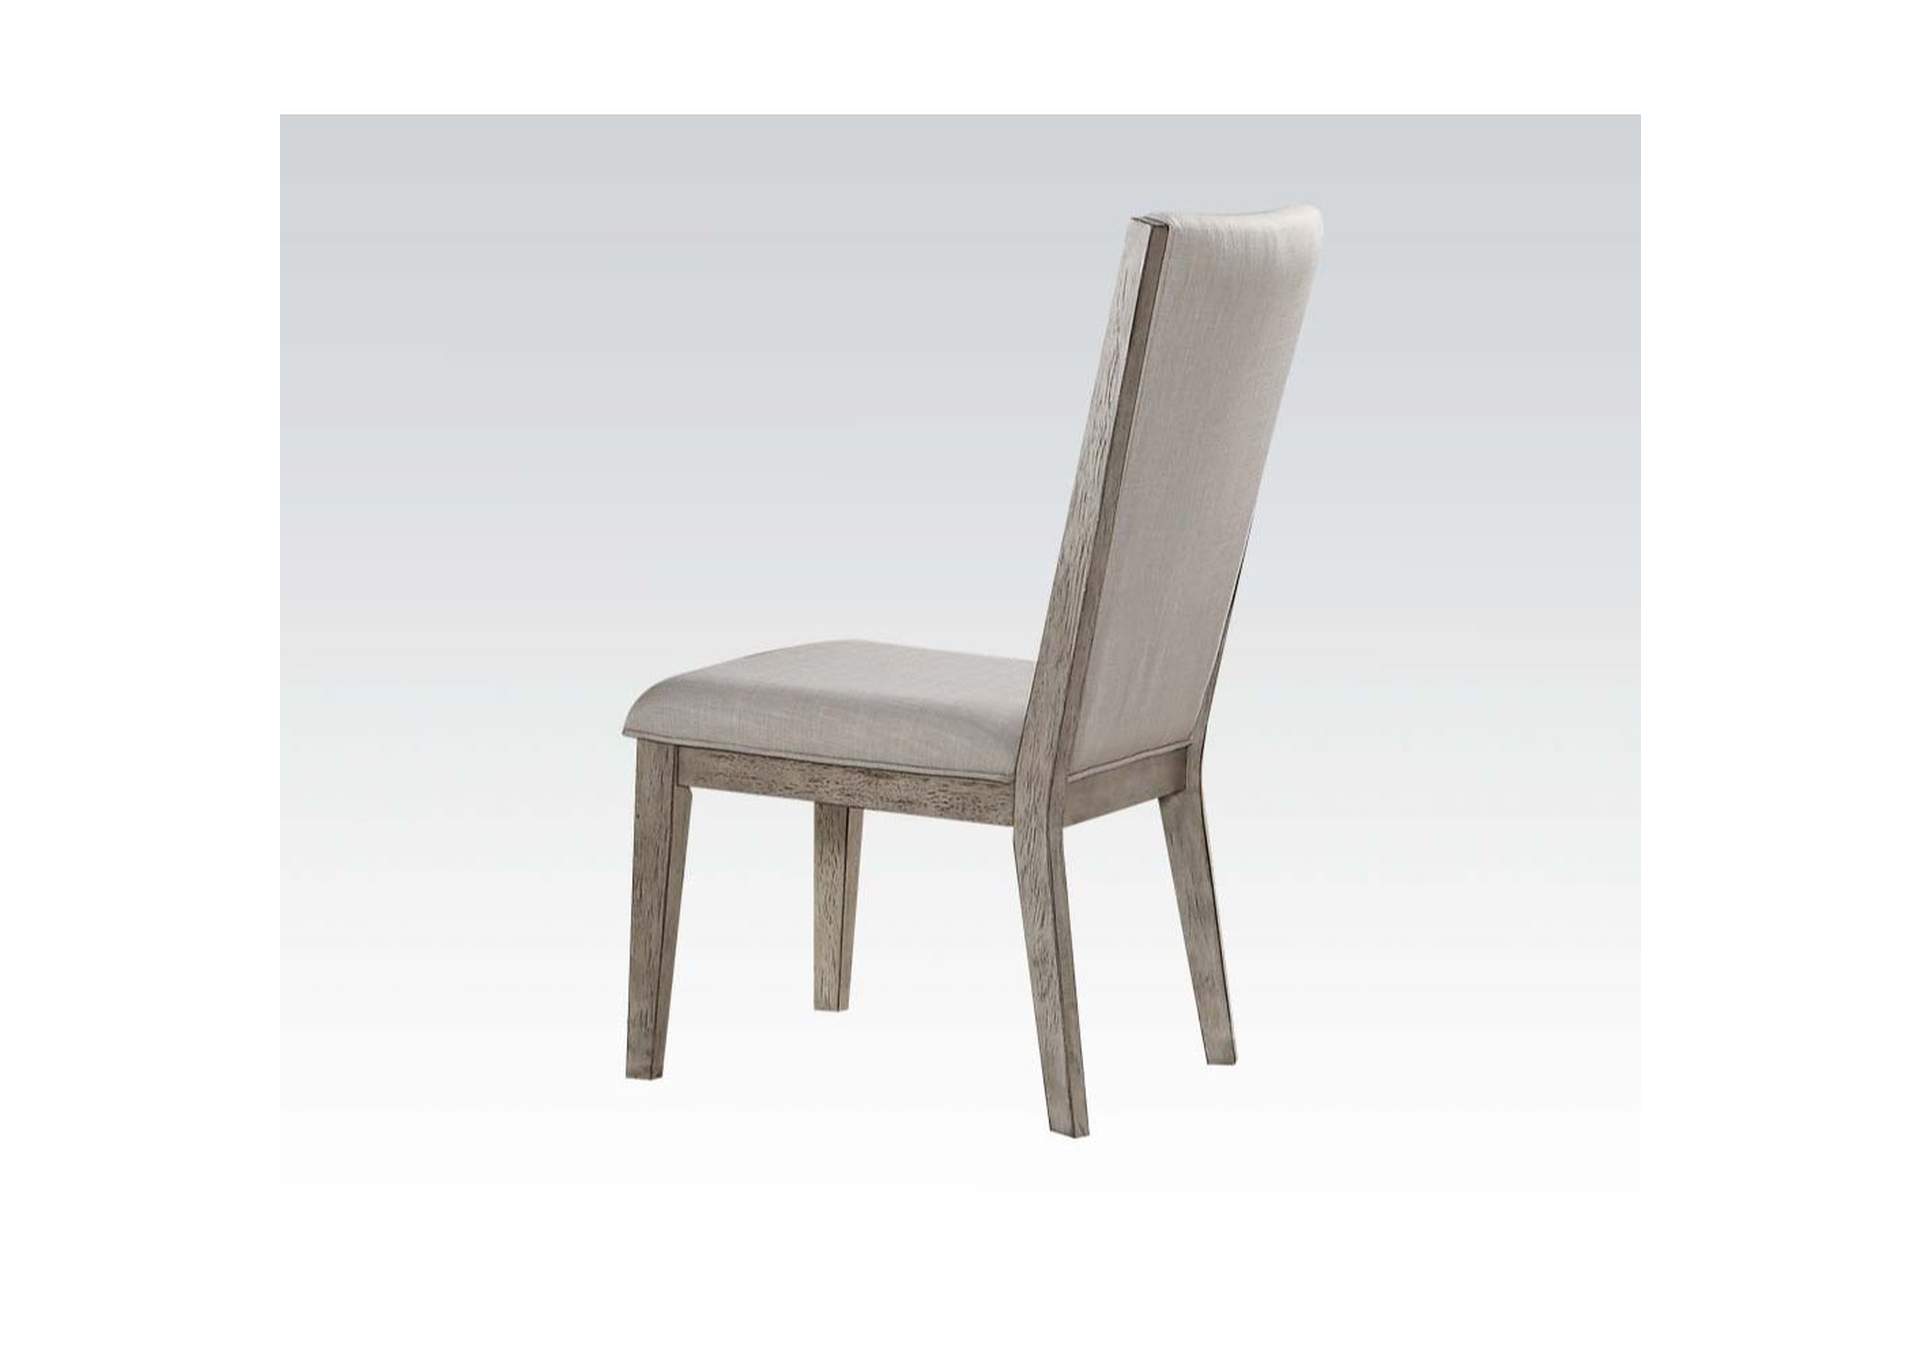 Rocky Fabric & Gray Oak Side Chair,Acme